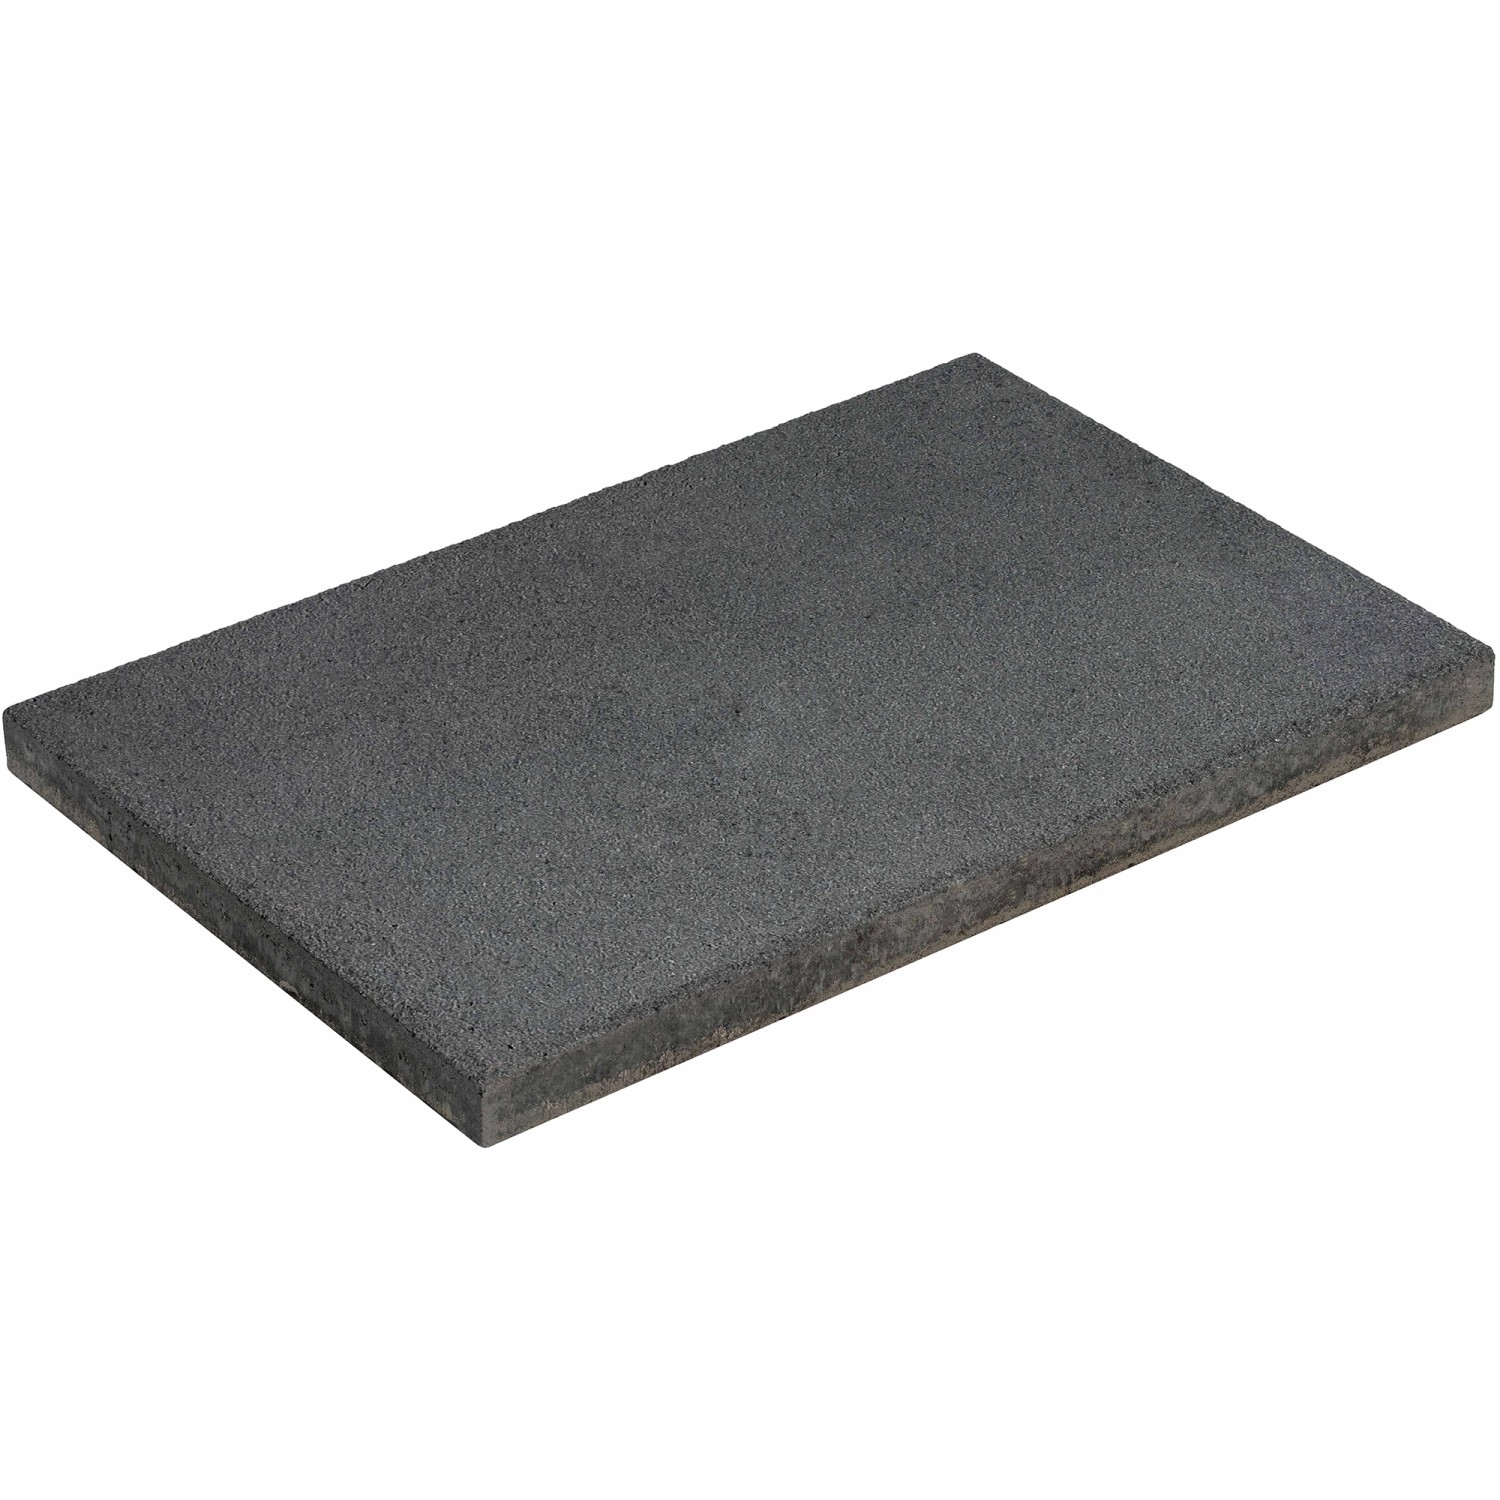 Diephaus Terrassenplatte Rustic Schwarz-Basalt 60 cm x 40 cm x 4 cm